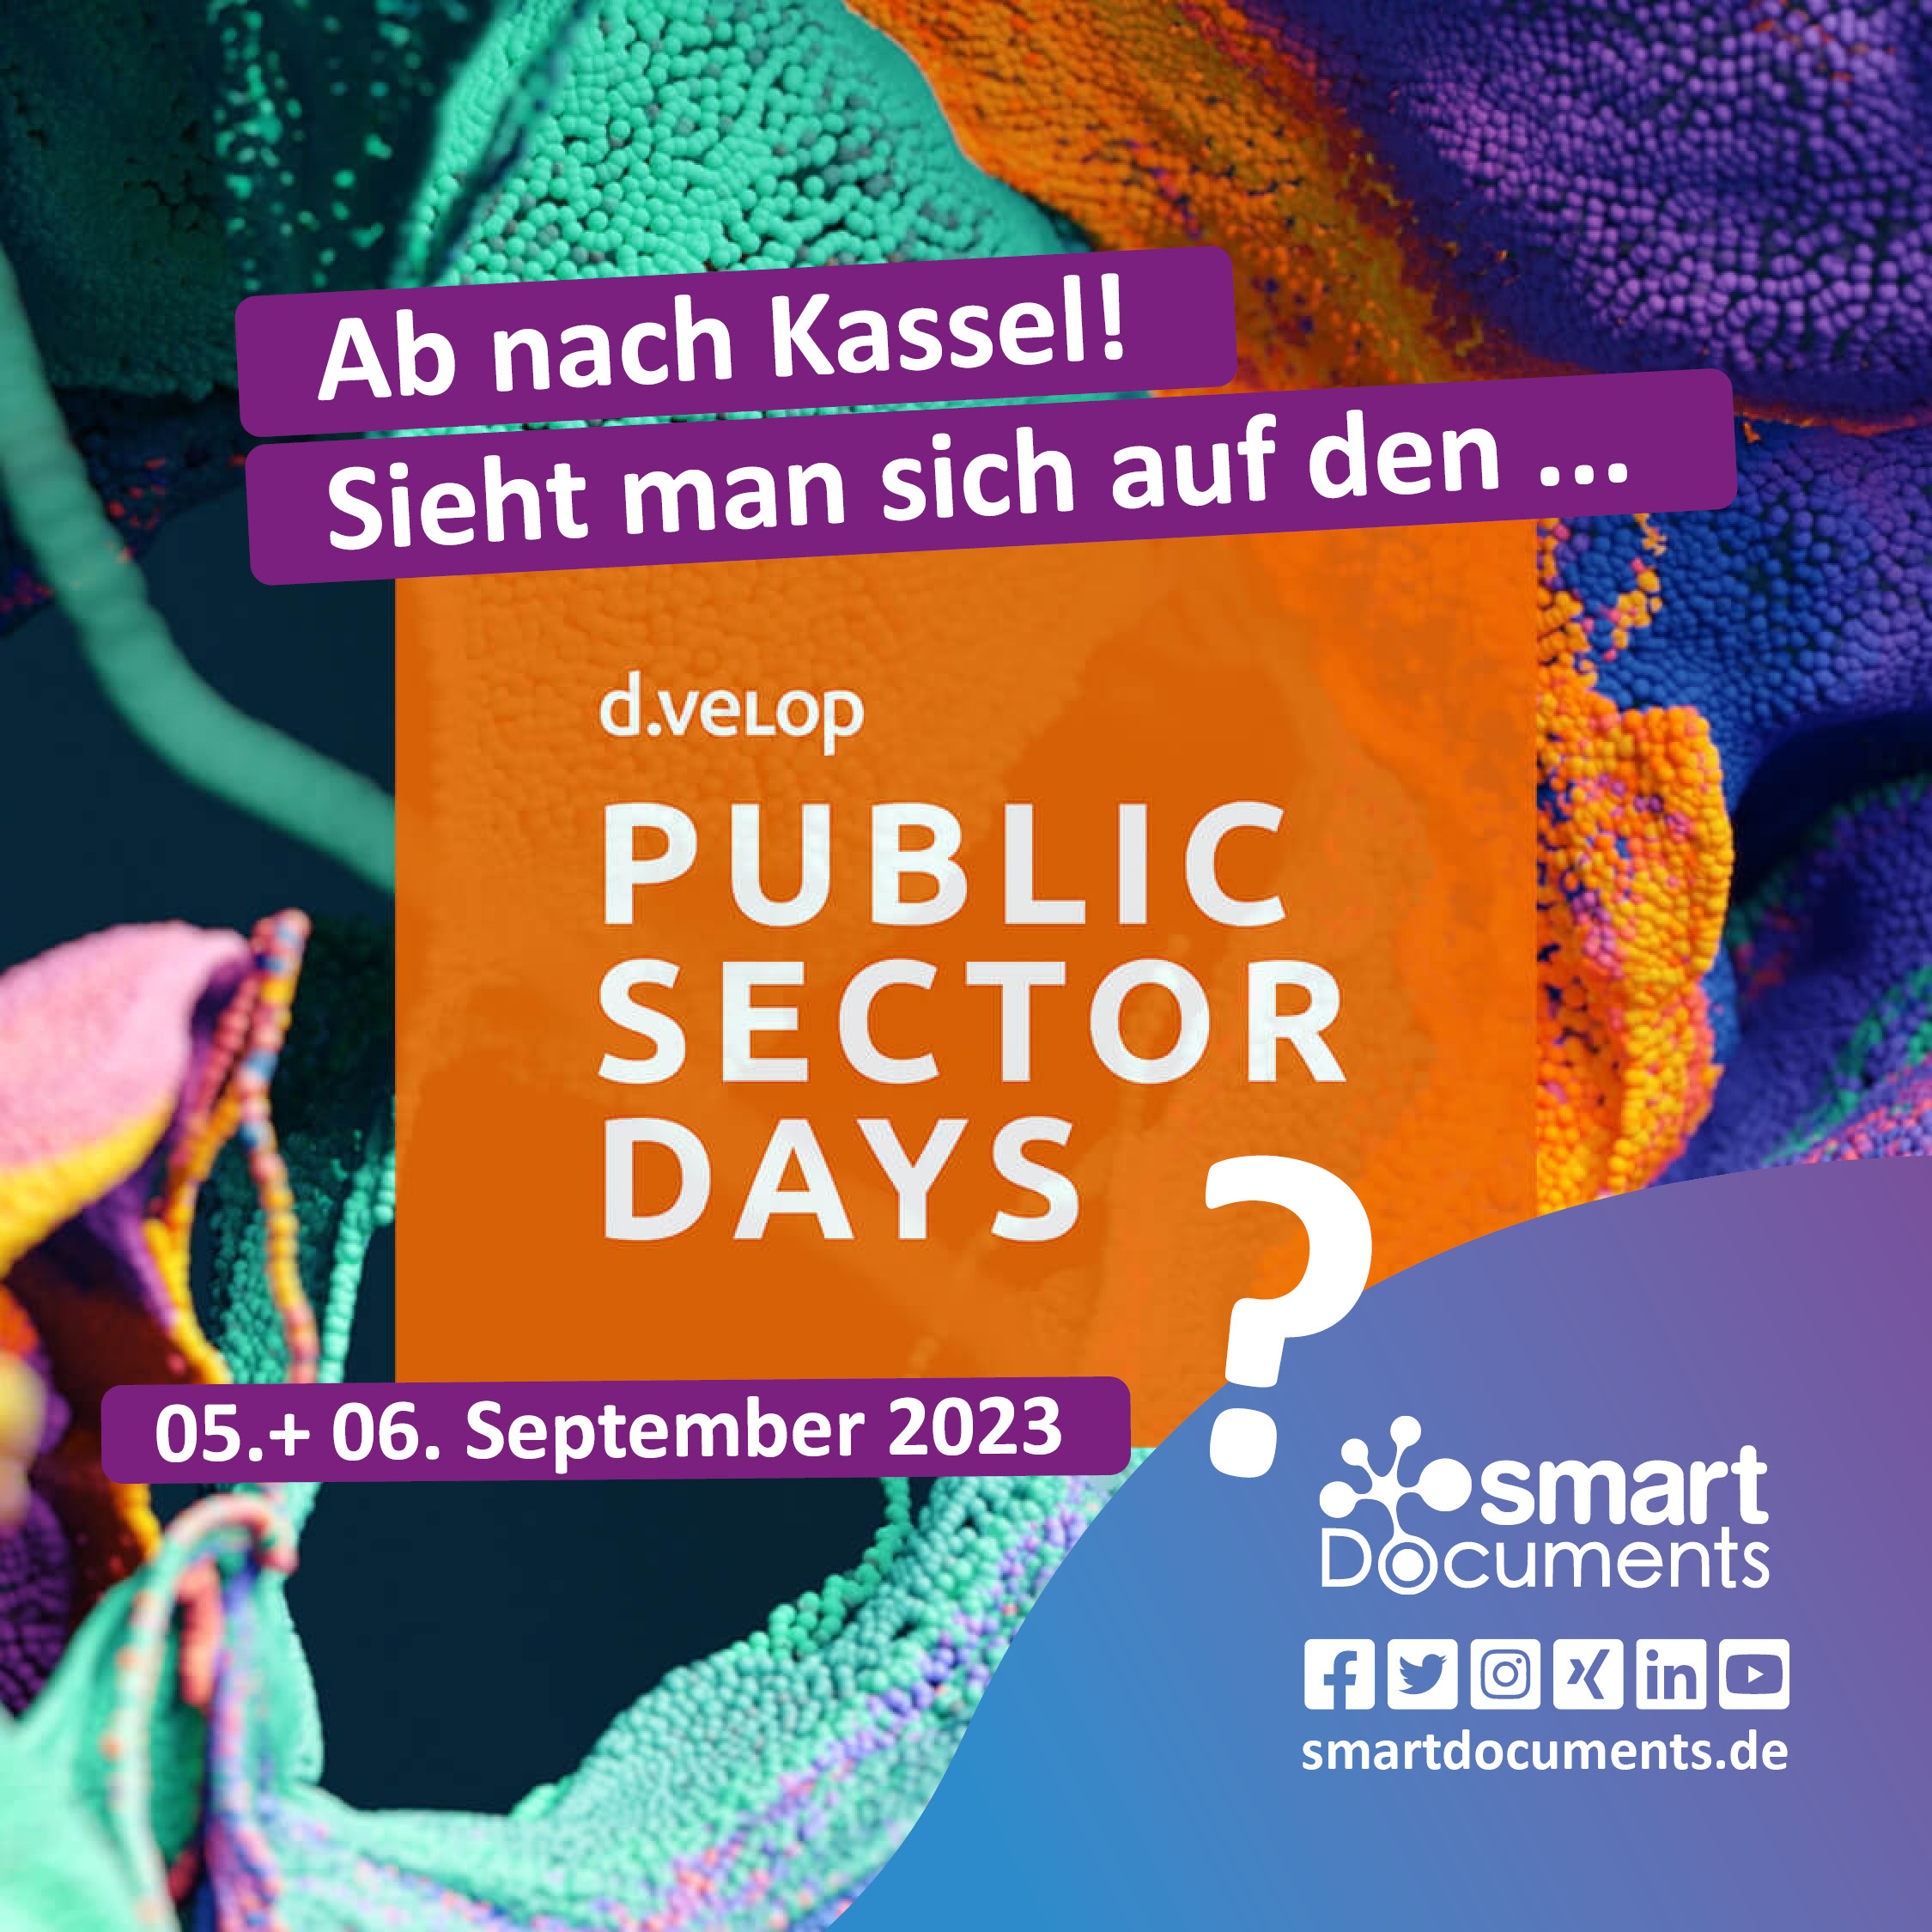 d.velop public sector days 2023 in Kassel